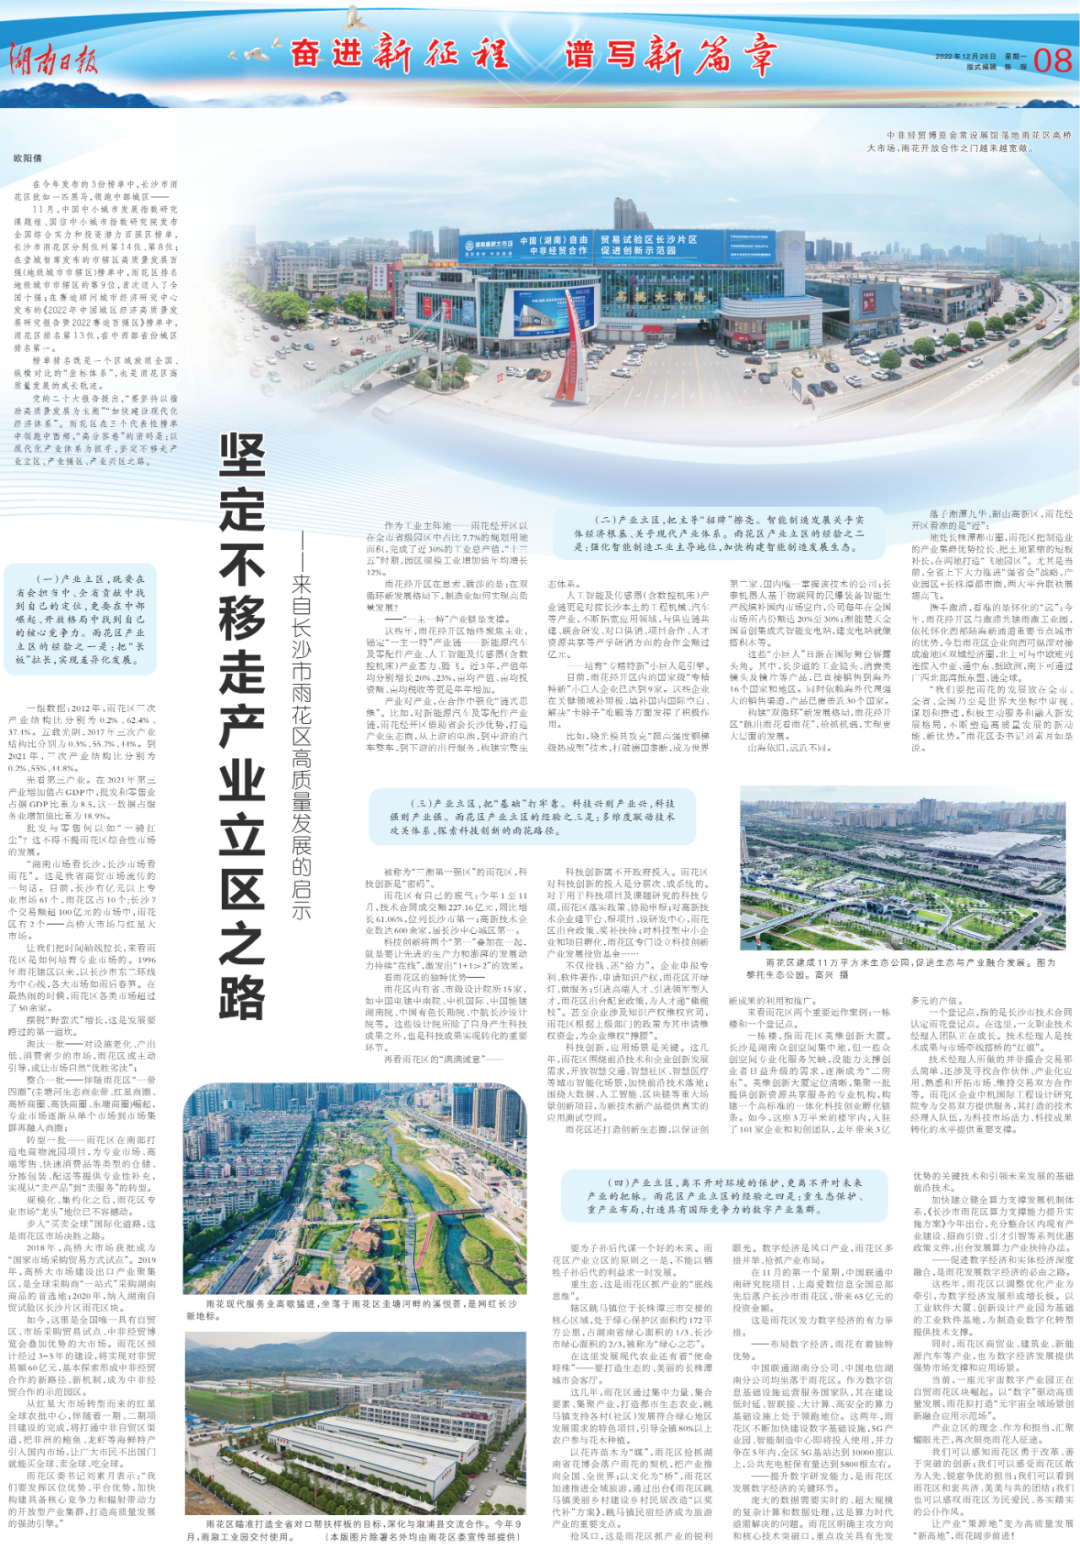 本文刊发于《湖南日报》2022年12月26日第08版。